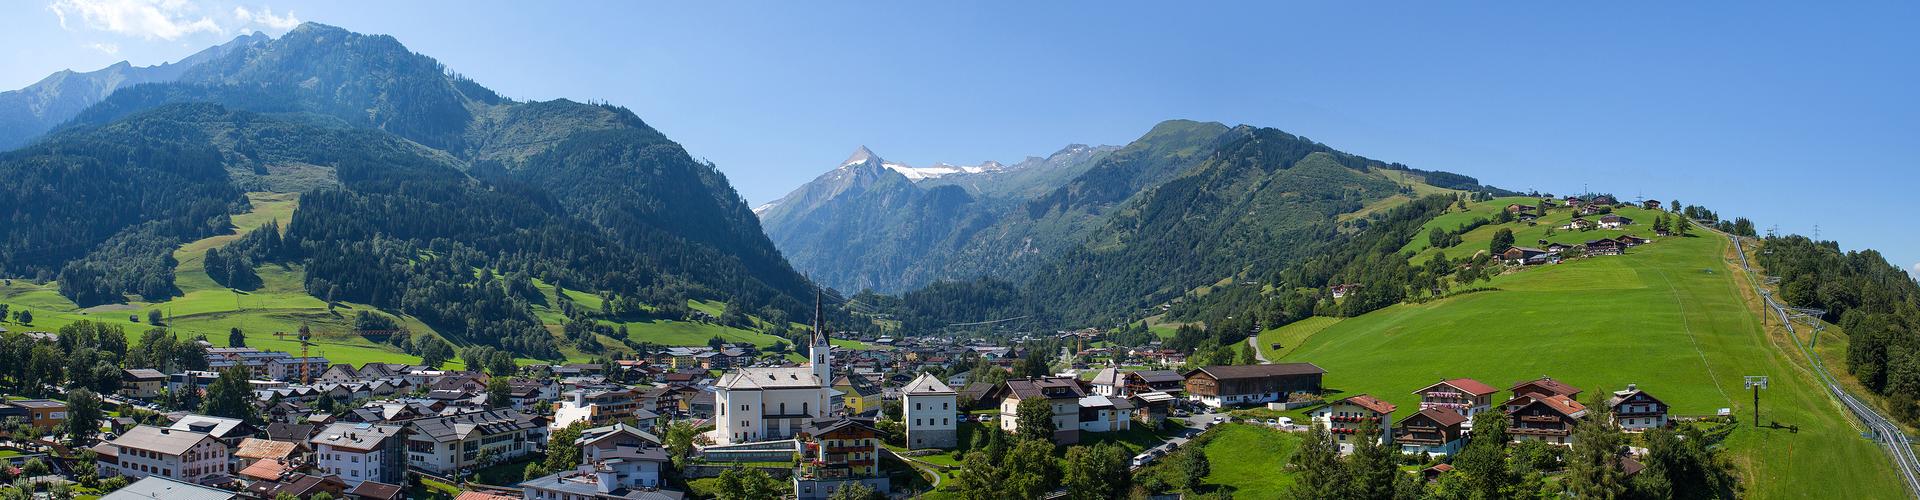 Traumhafte Bergwelt in Kaprun-Zell am See im Salzburgerland